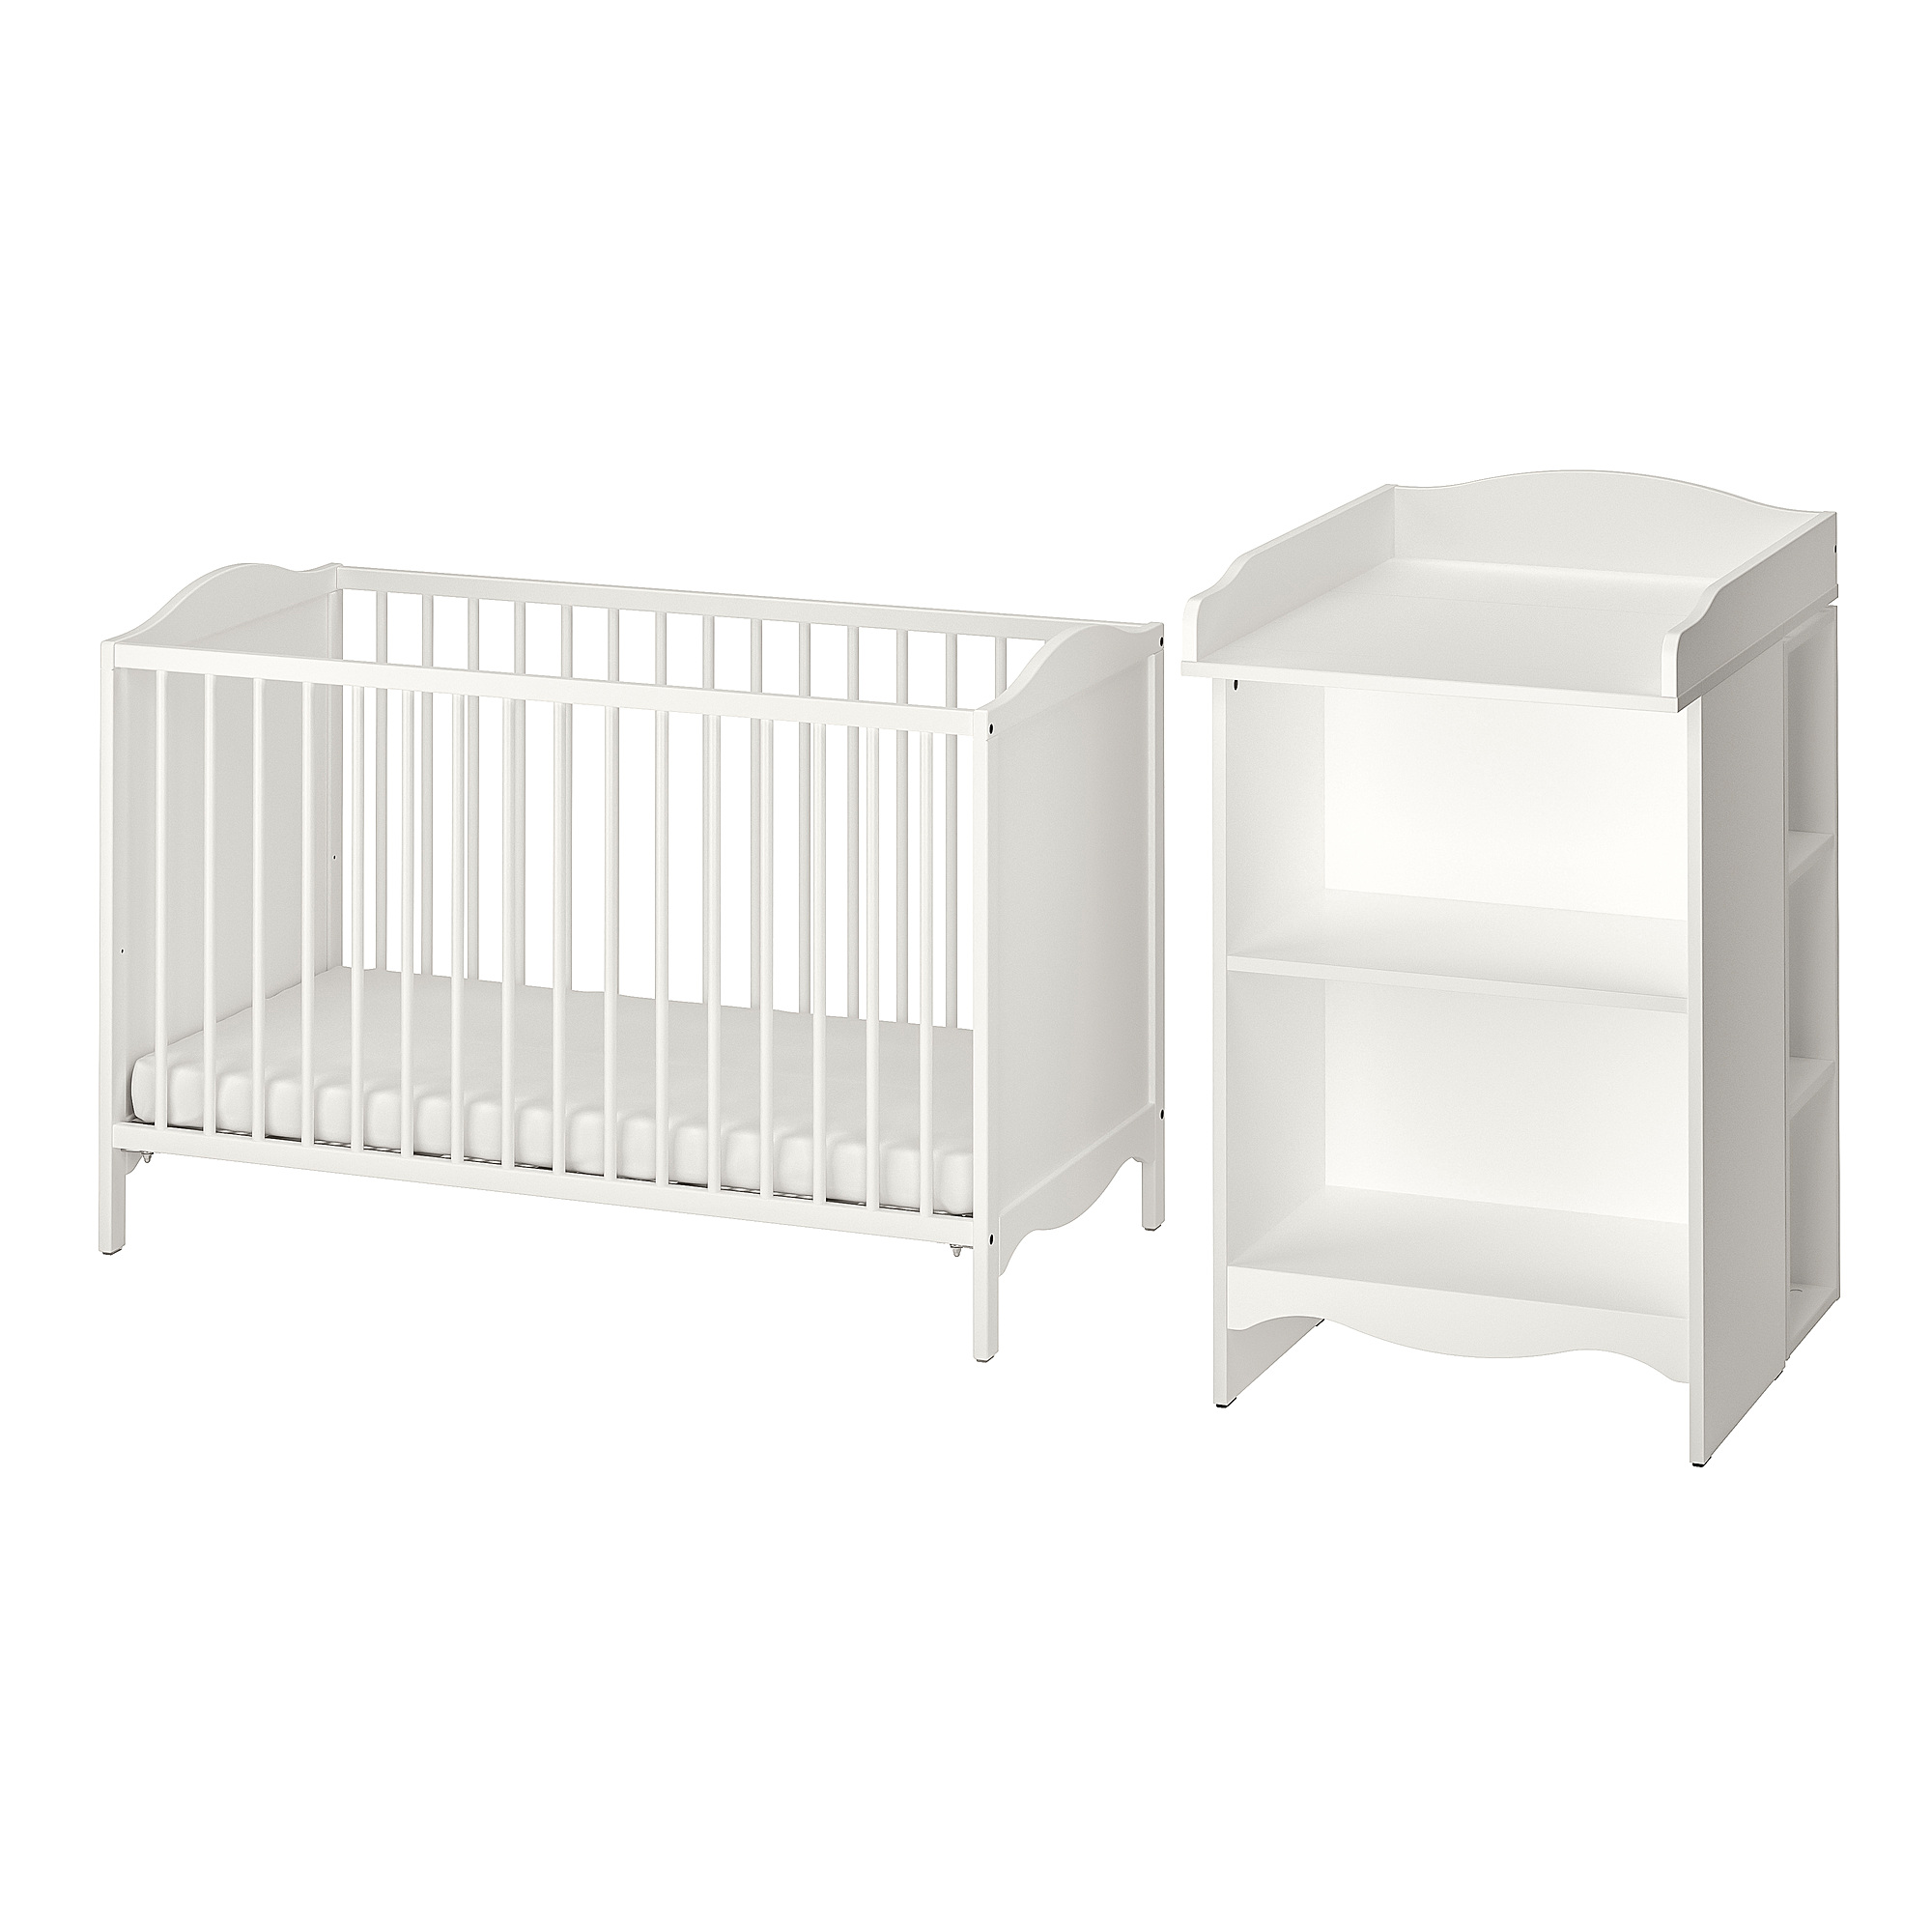 SMÅGÖRA 2-piece baby furniture set